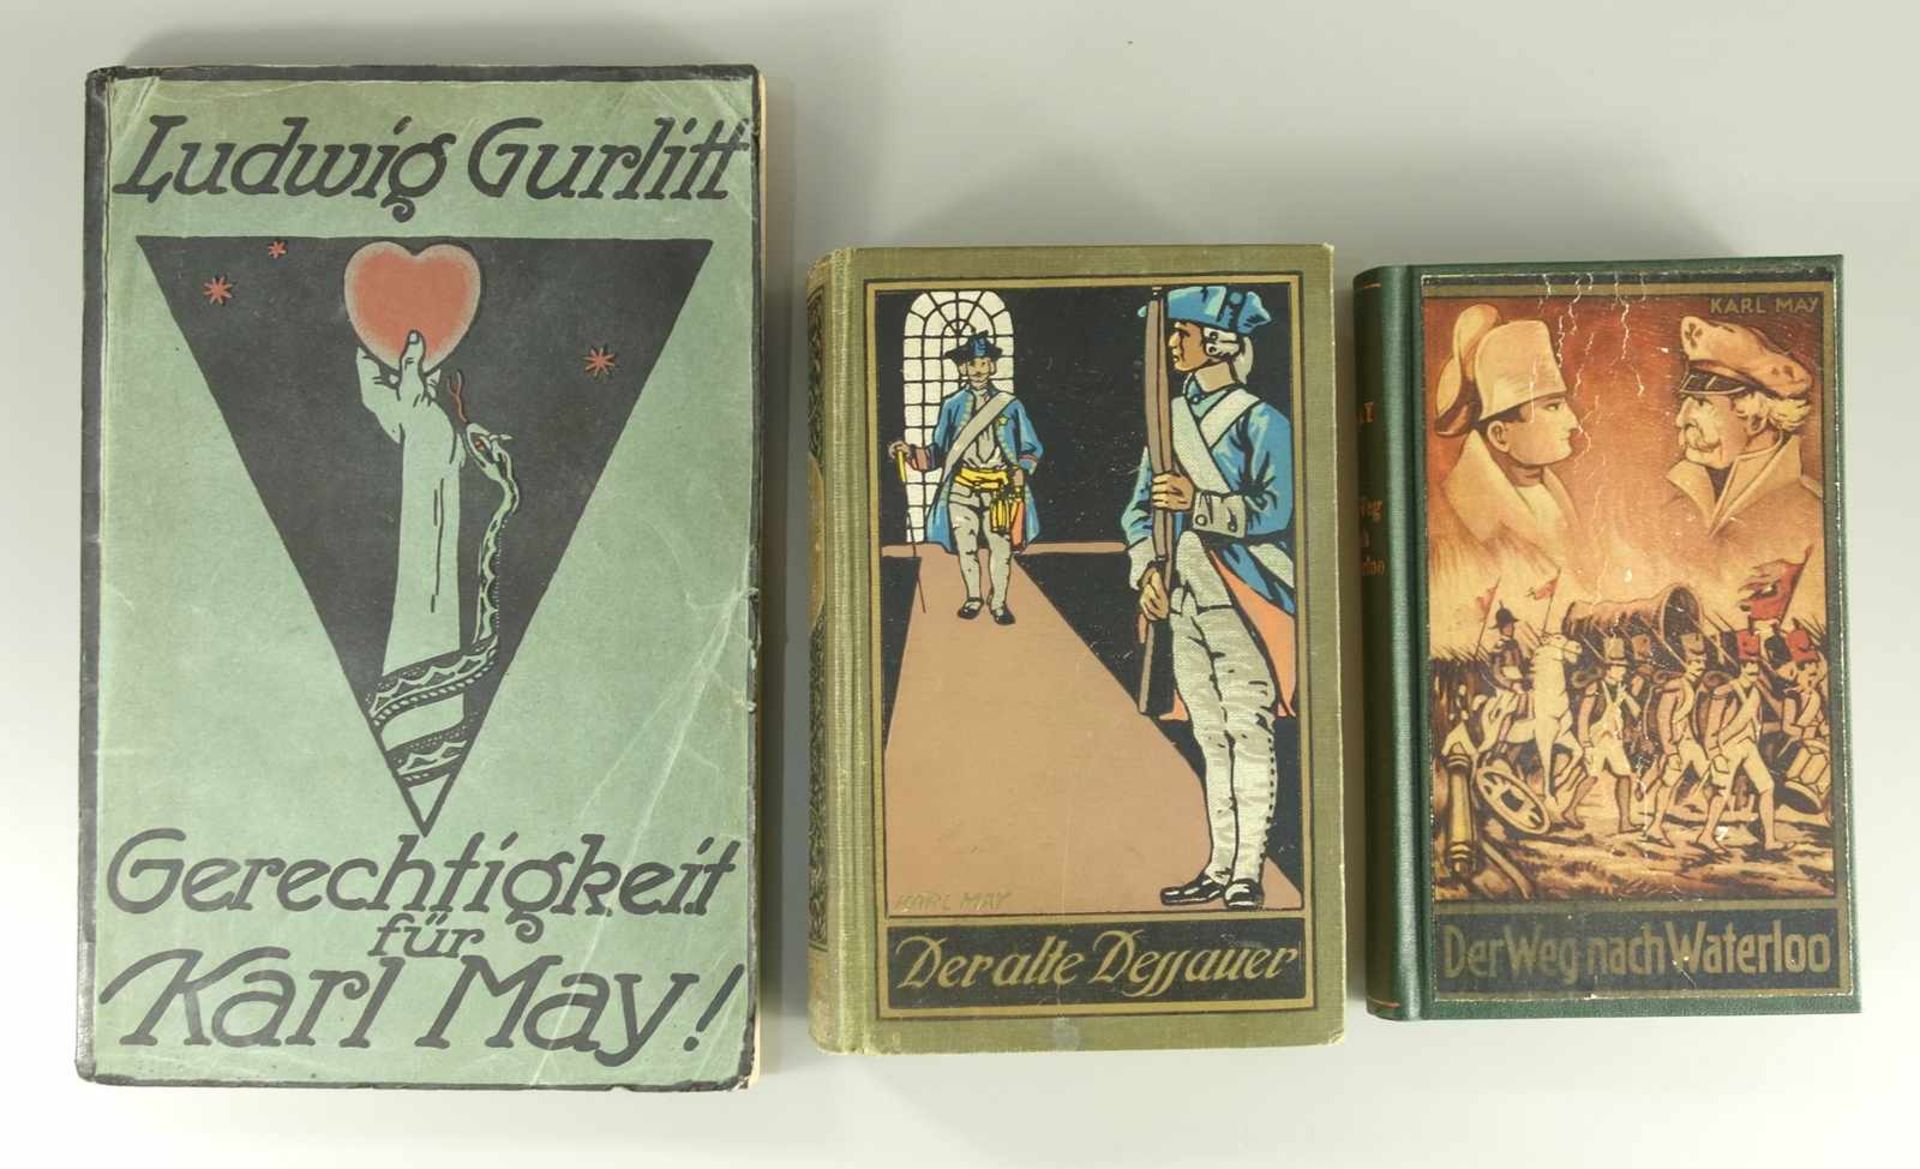 2 Karl May Bücher, dazu Broschüre "Gerechtigkeit für Karl May!", "Der alte Desauer", 1921 und "Der